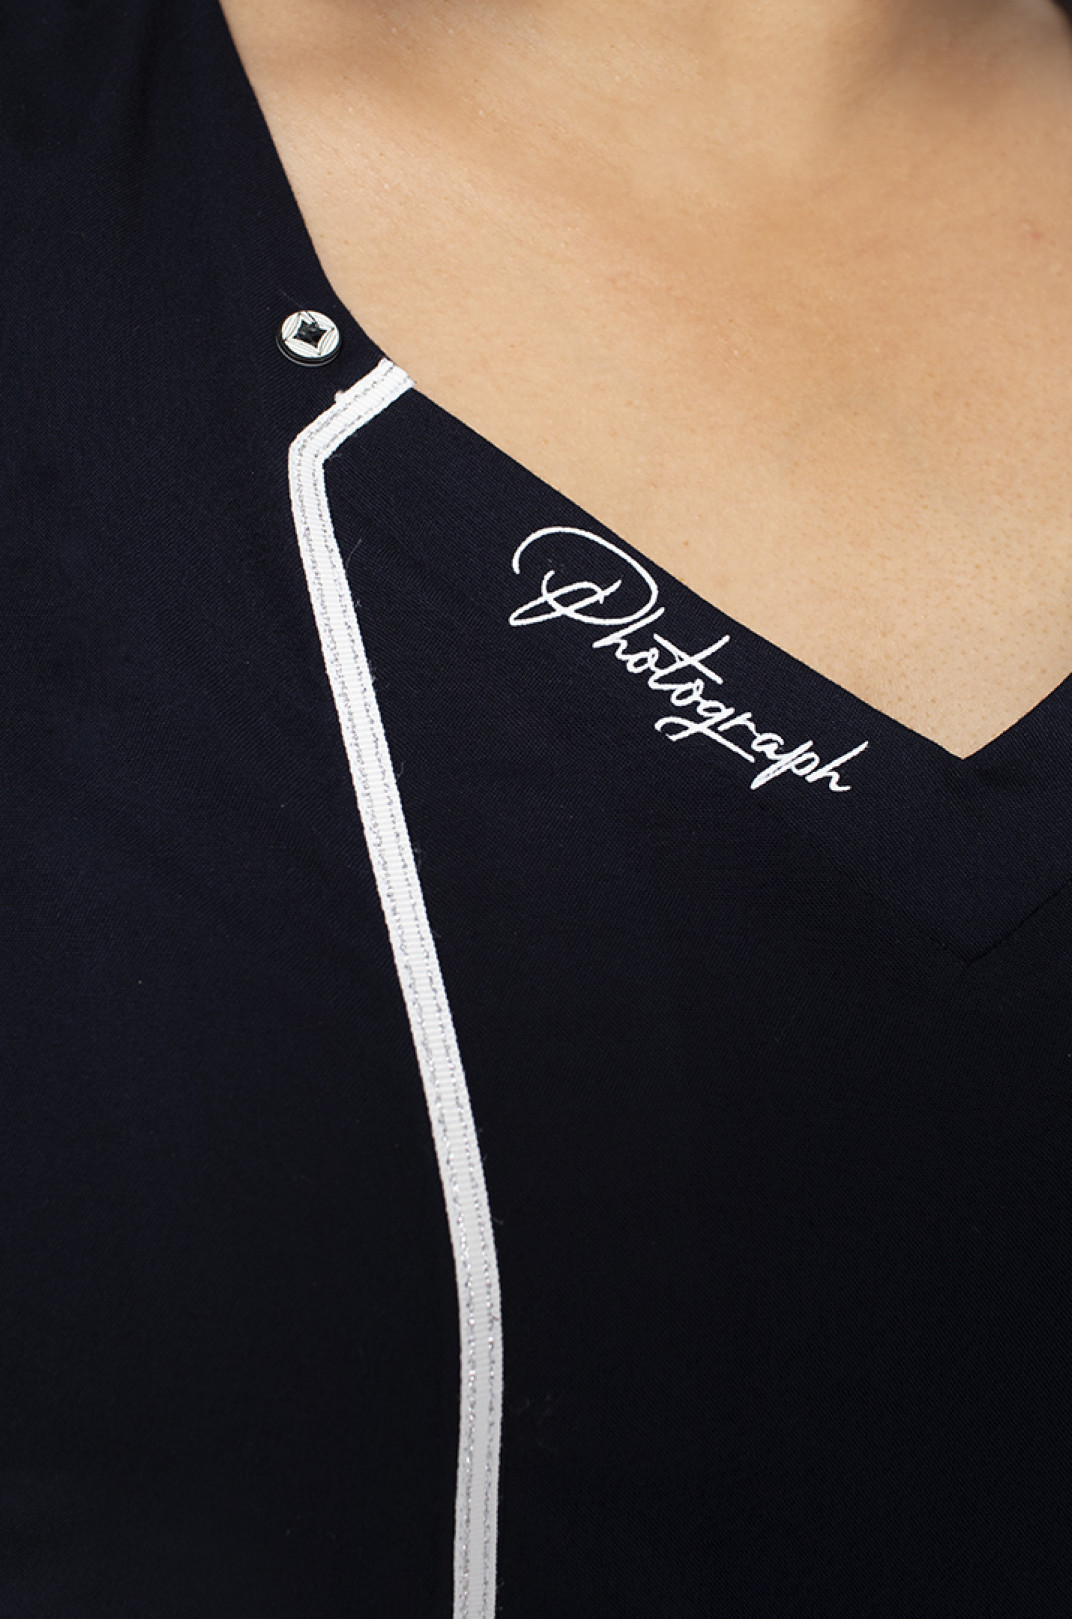 Блуза оригинального дизайна с надписями супер батал